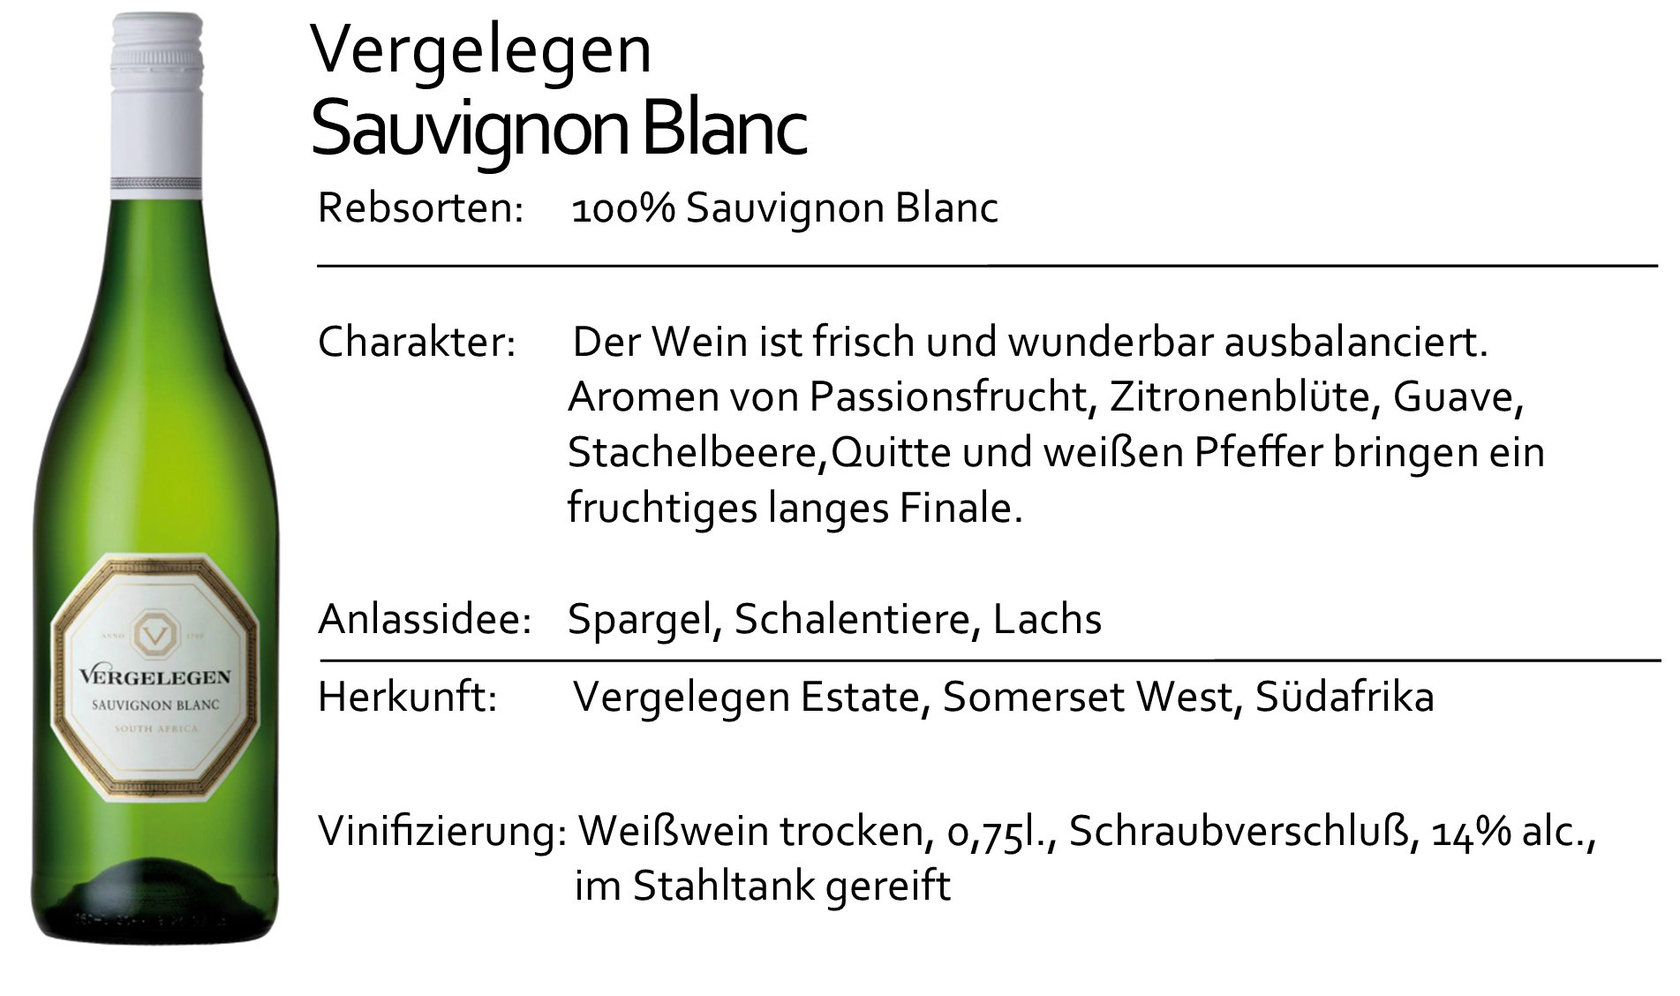 Vergelegen Sauvignon Blanc 2021